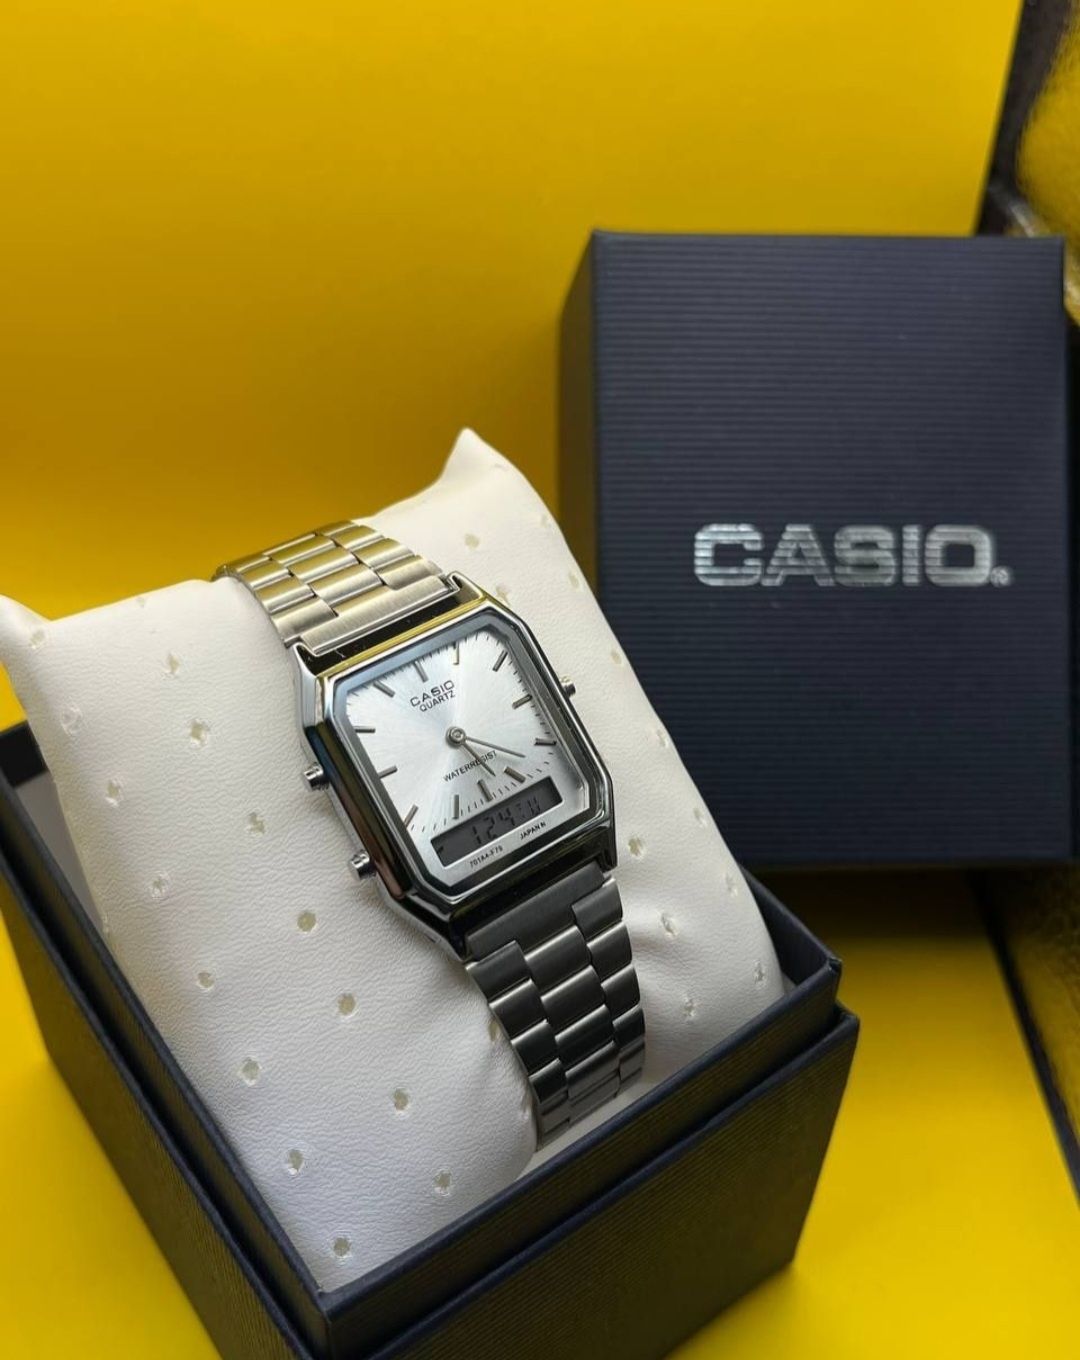 Мужские часы стильные. Касио. Casio. С гарантией